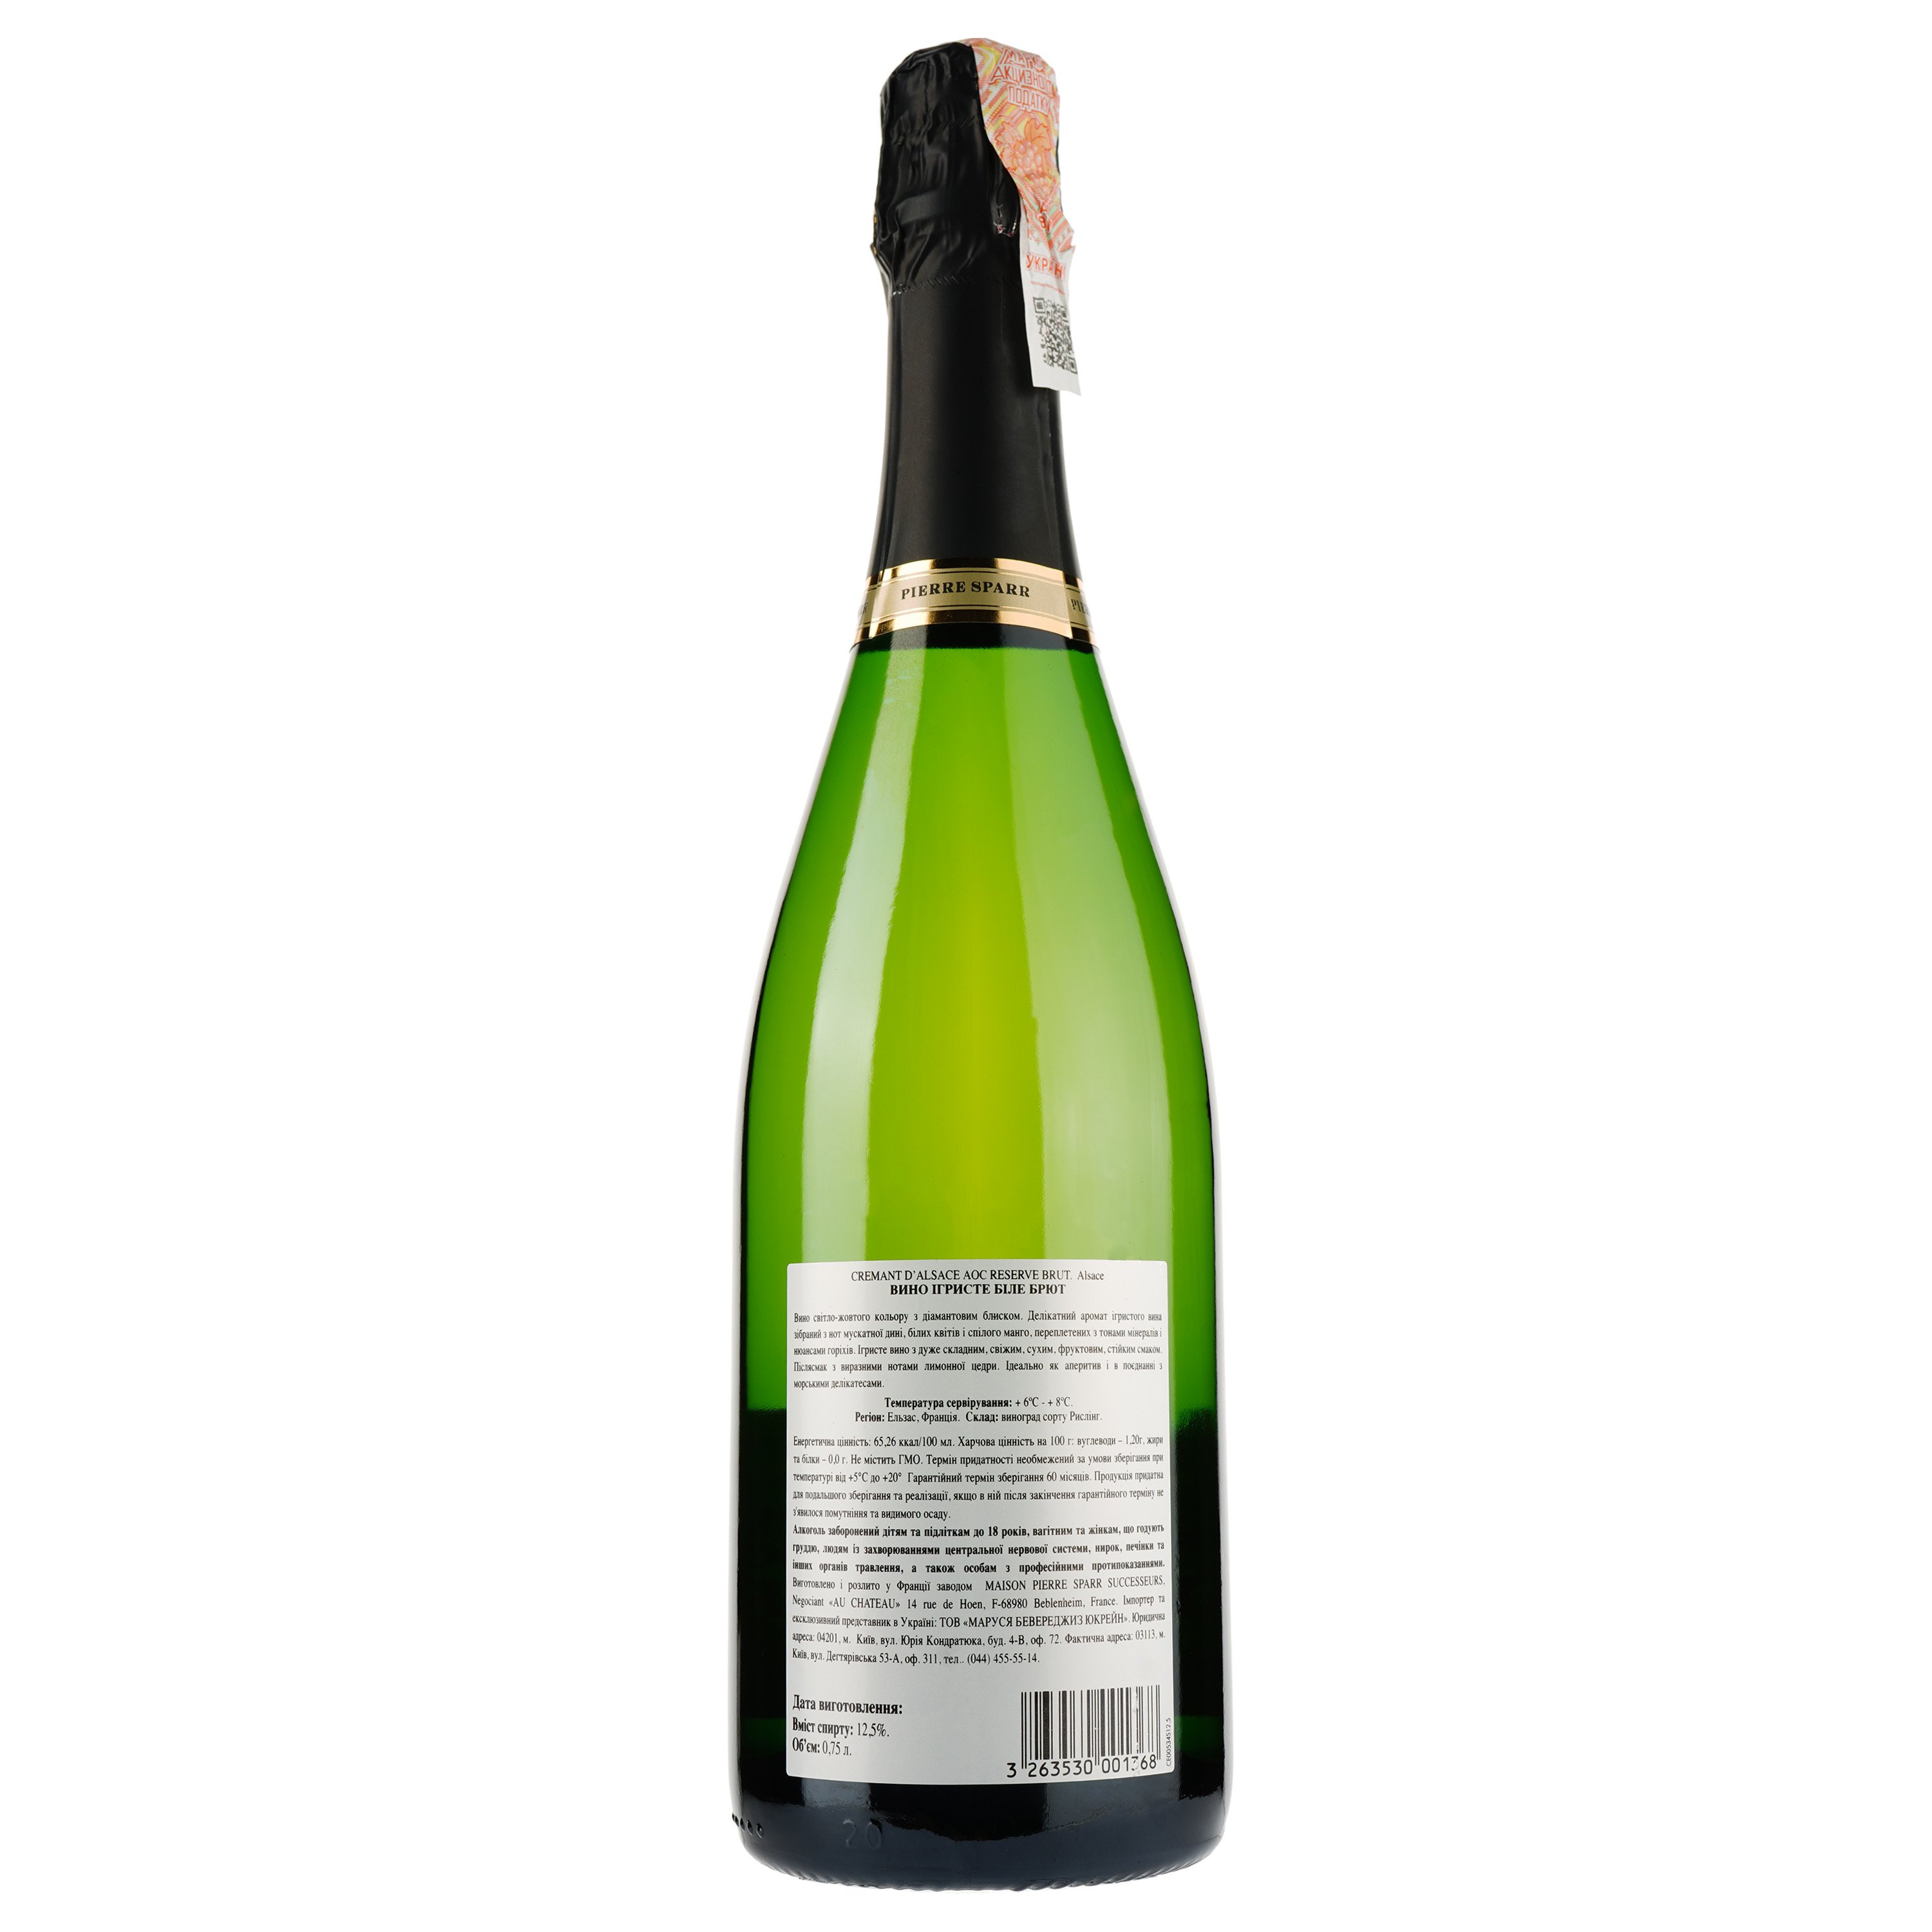 Игристое вино Pierre Sparr Cremant D'Alsace Brut Reserve, белое, брют, 12%, 0,75 л - фото 2